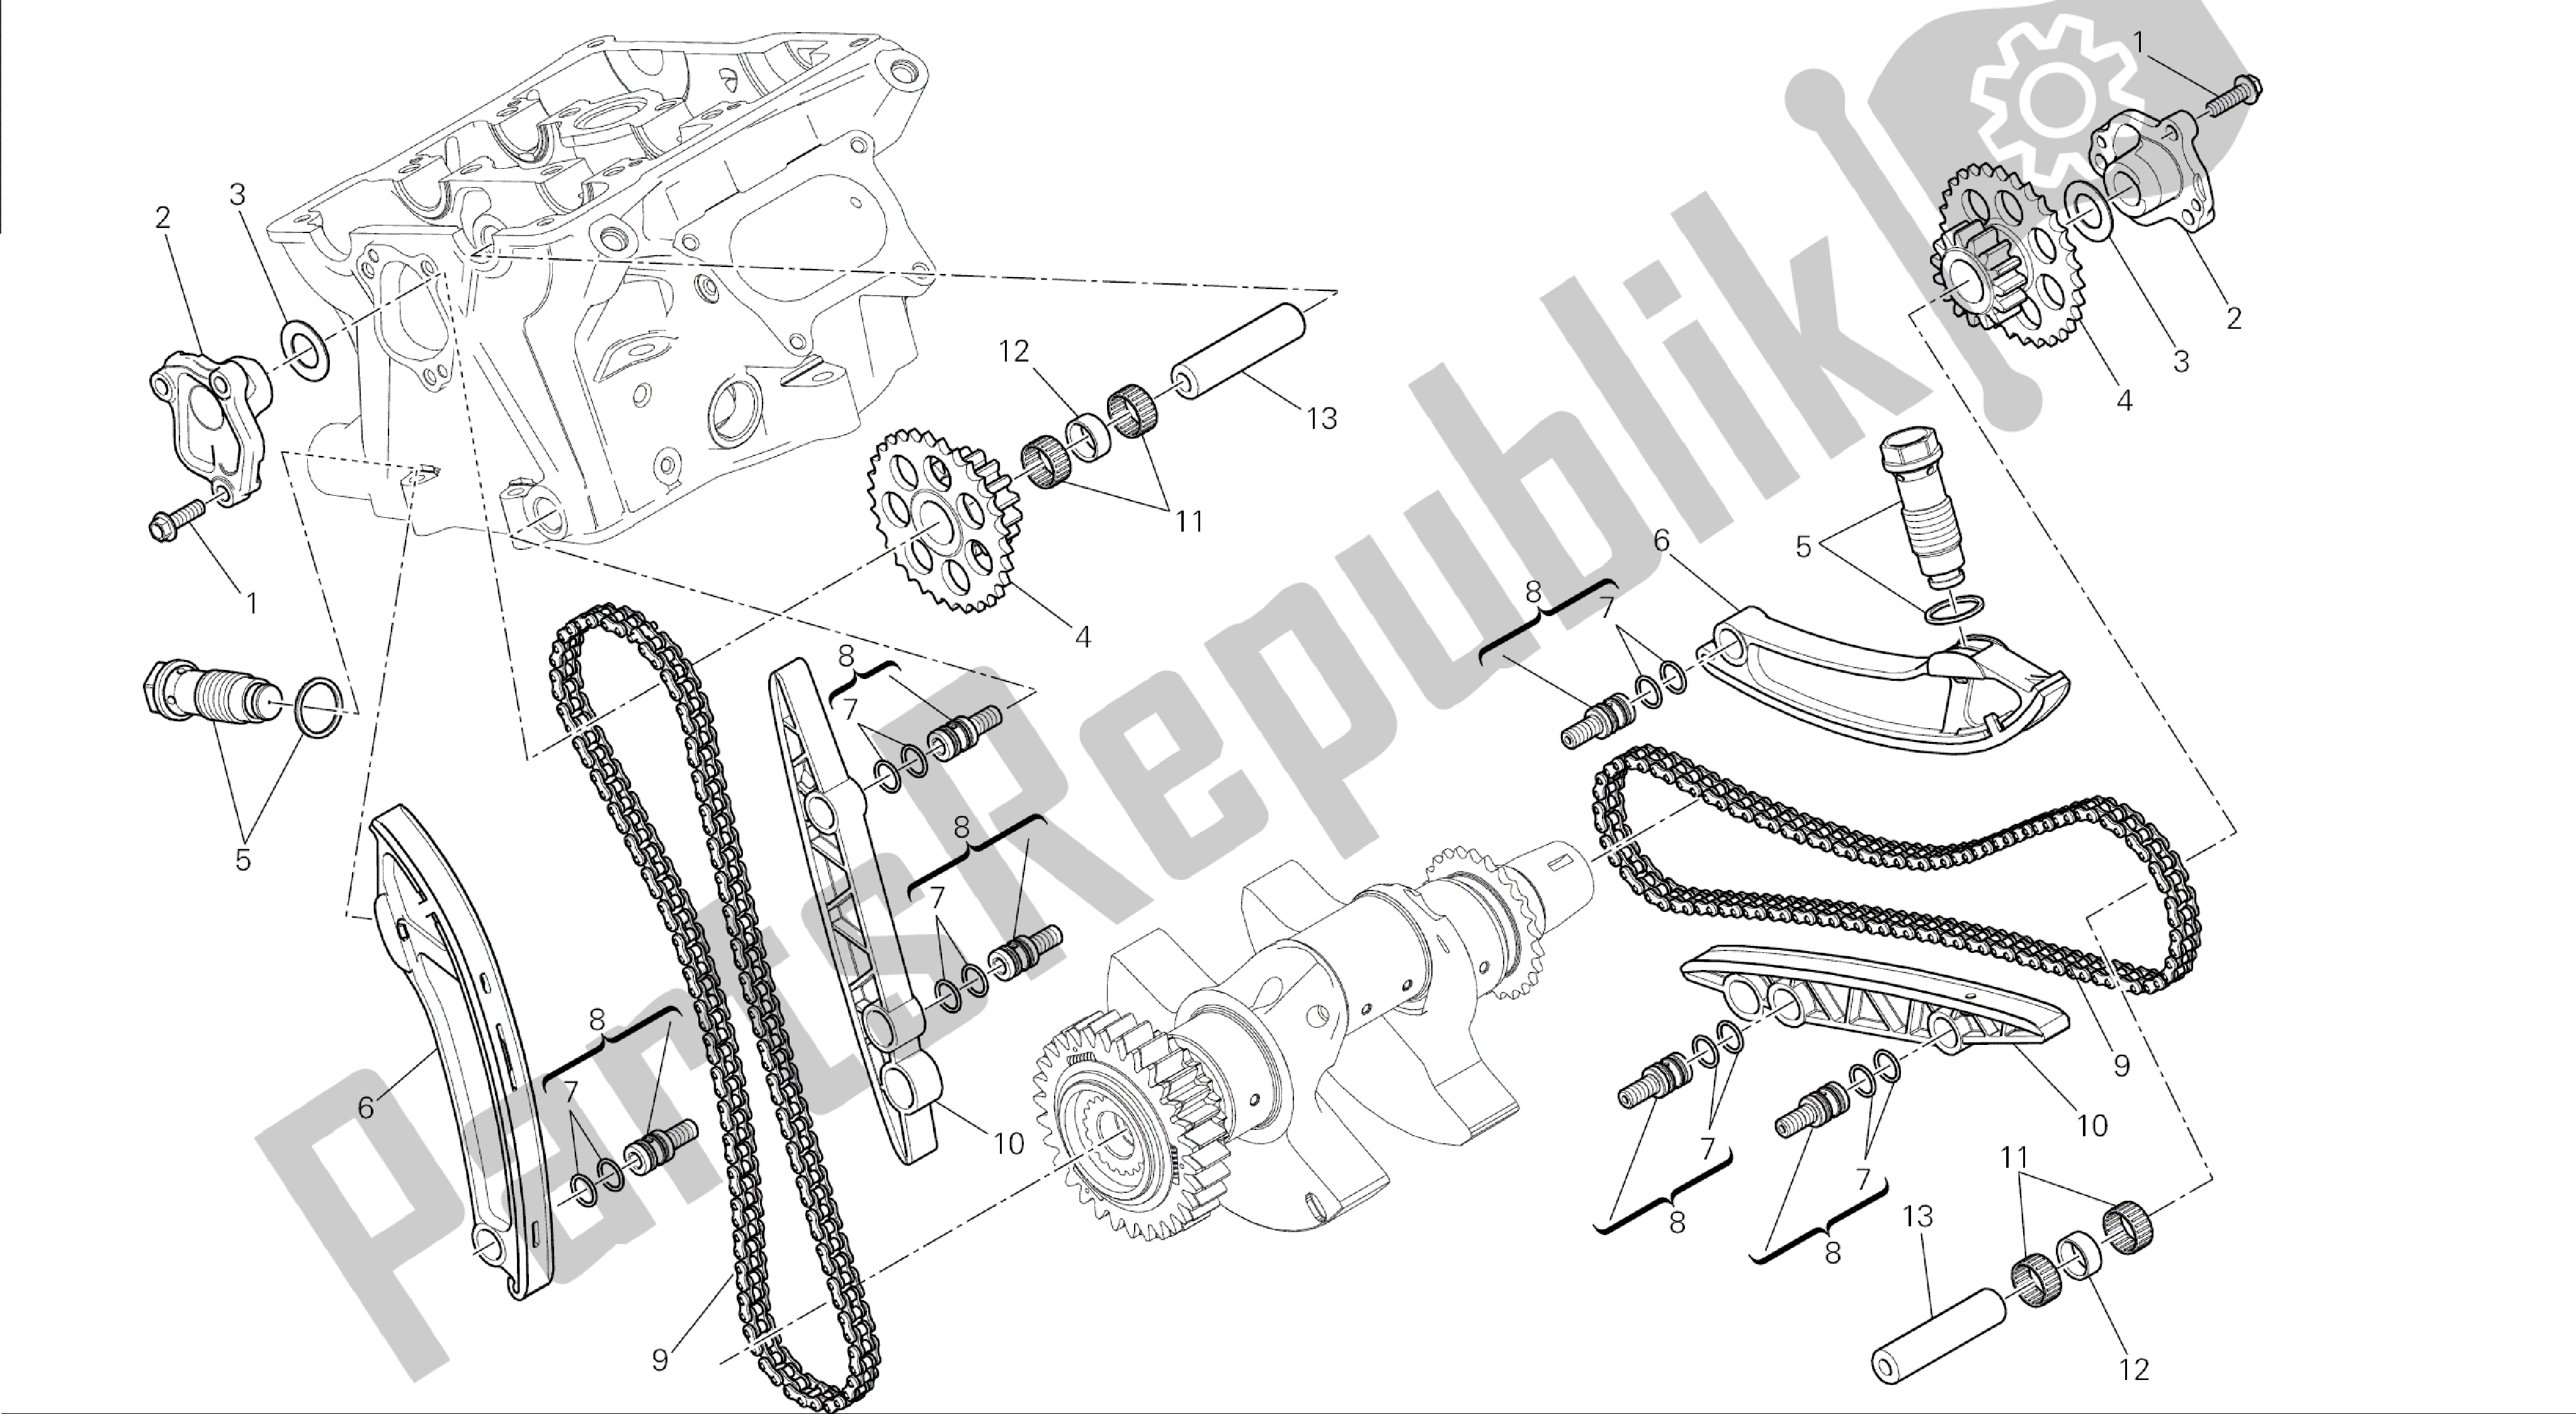 Alle onderdelen voor de Tekening 008 - Distribuzione [mod: 1199 Abs; Xst: Aus, Bra, Chn, Eur, Fra, Jap] Group Engine van de Ducati Panigale ABS 1199 2014